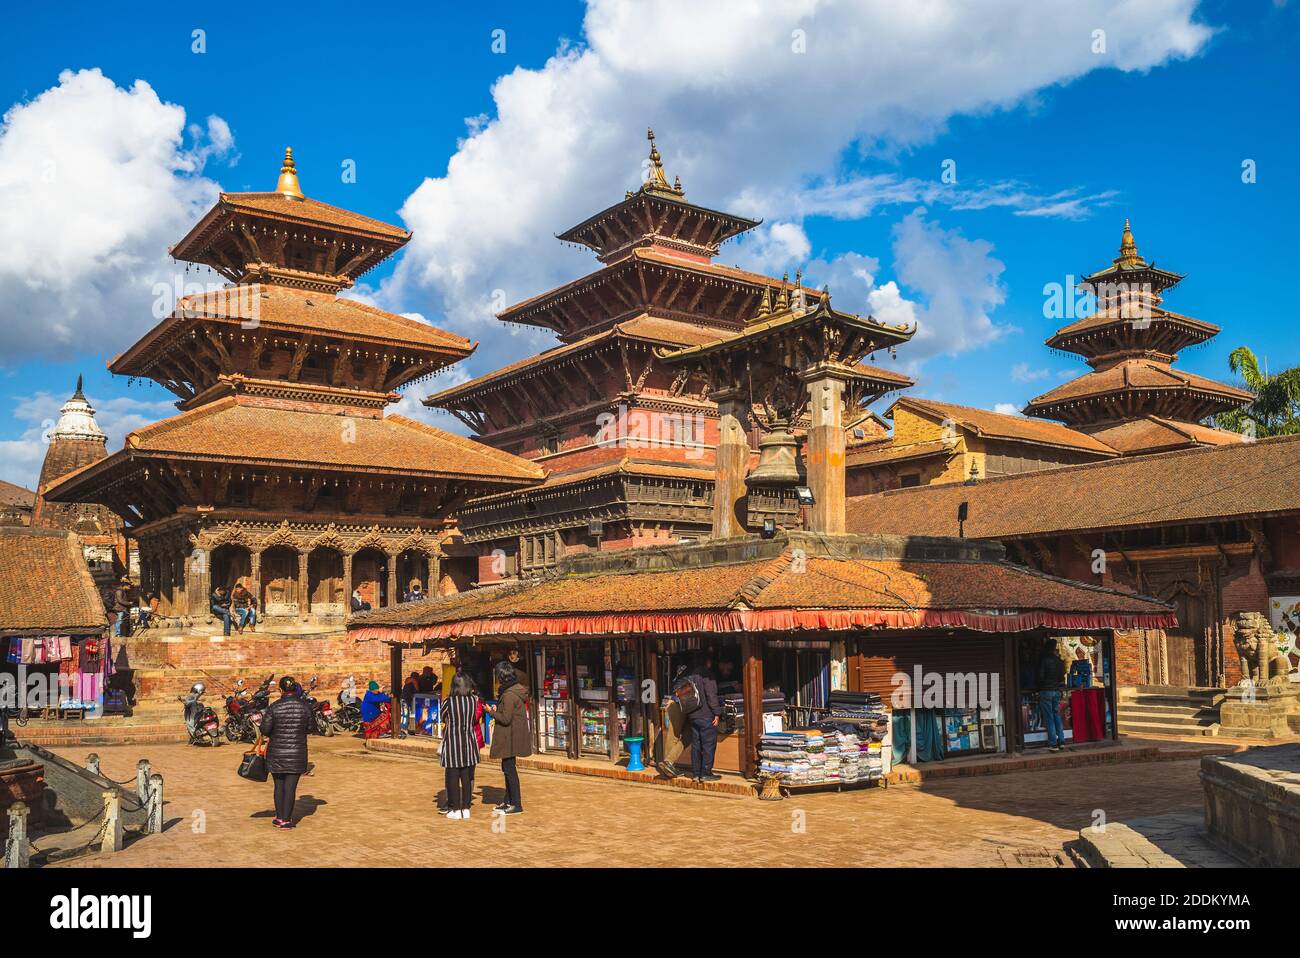 Paysage de la place Patan Durbar à Katmandou, au Népal Banque D'Images